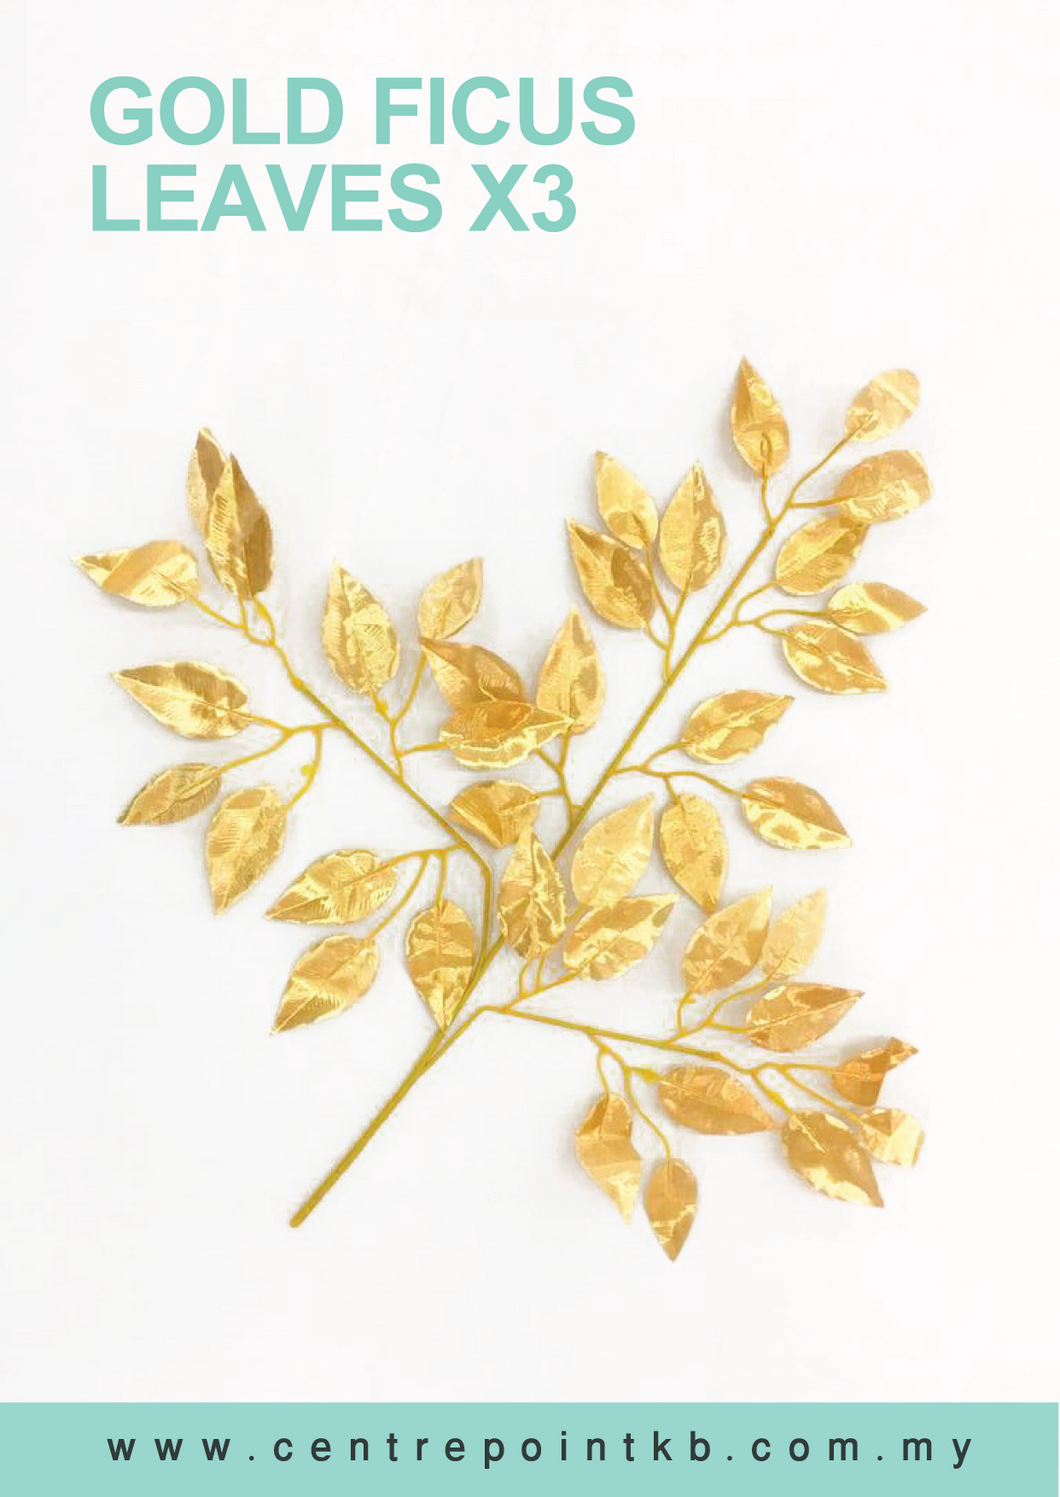 Gold Ficus Leaves X3 (Pieces/Dozen)